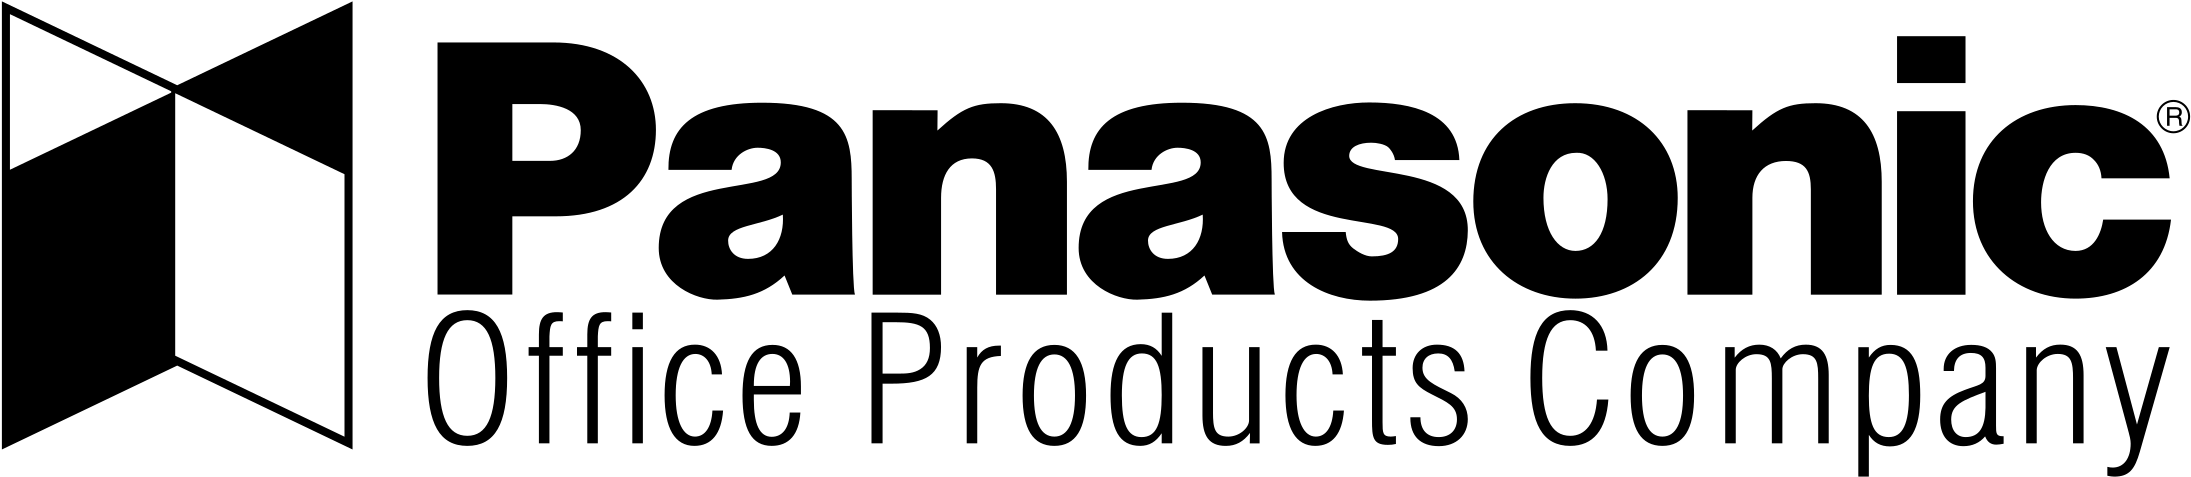 Логотип Панасоник в векторе